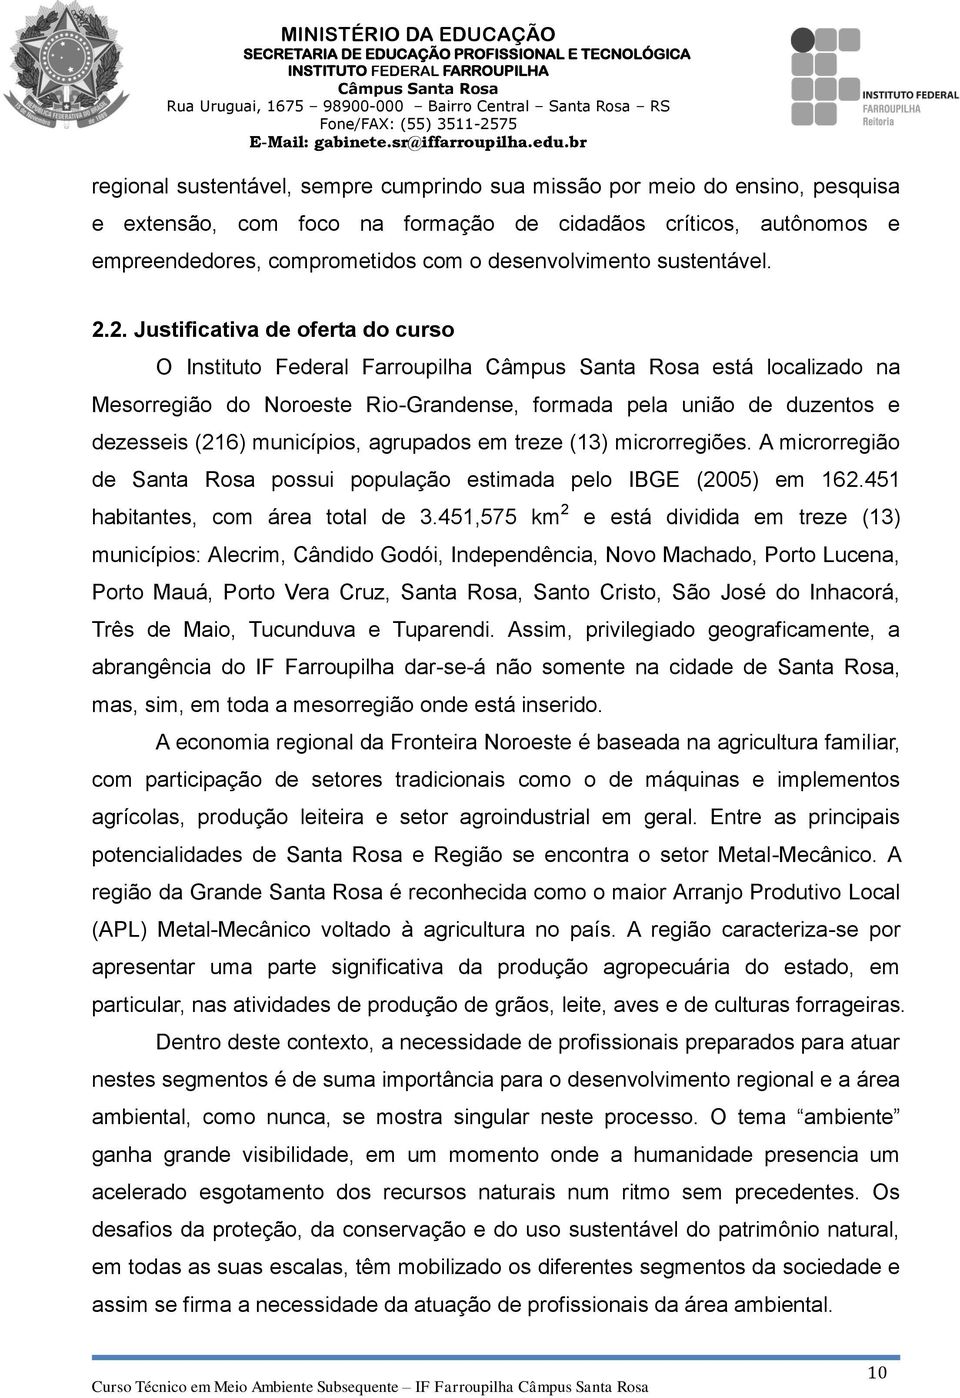 2. Justificativa de oferta do curso O Instituto Federal Farroupilha está localizado na Mesorregião do Noroeste Rio-Grandense, formada pela união de duzentos e dezesseis (216) municípios, agrupados em